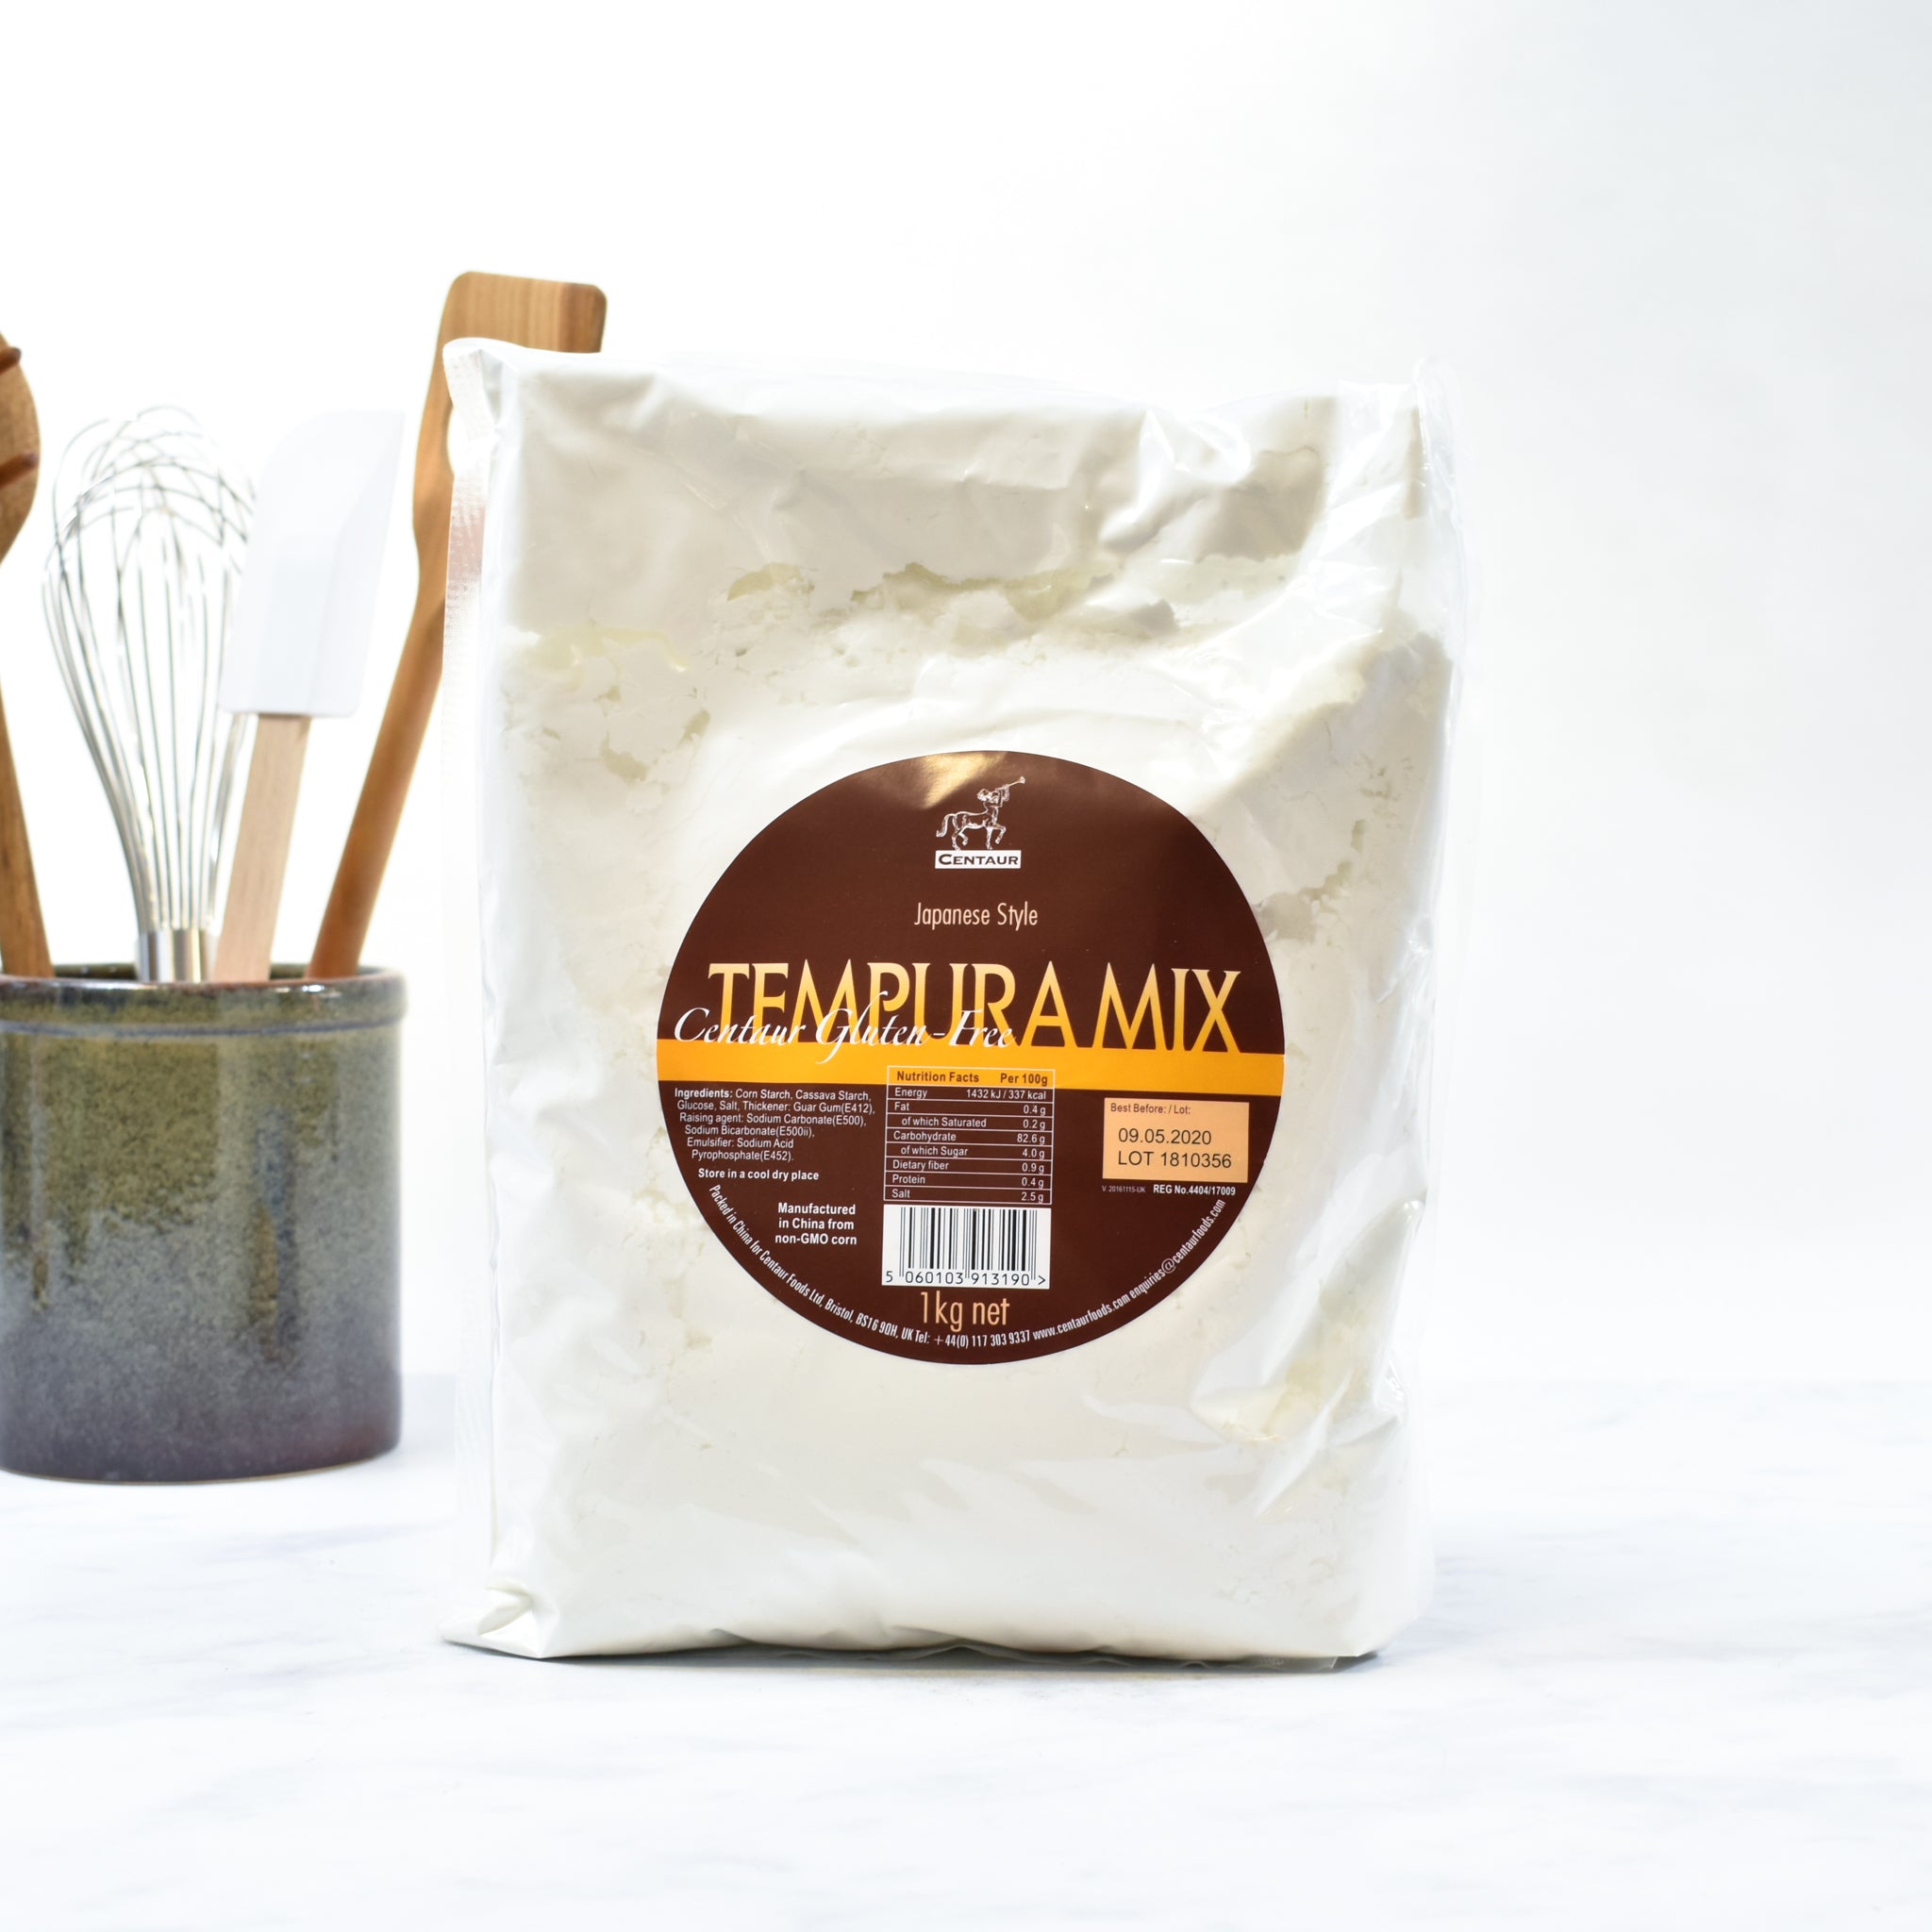 Centaur Gluten Free Tempura Mix 1kg Ingredients Flour Grains & Seeds